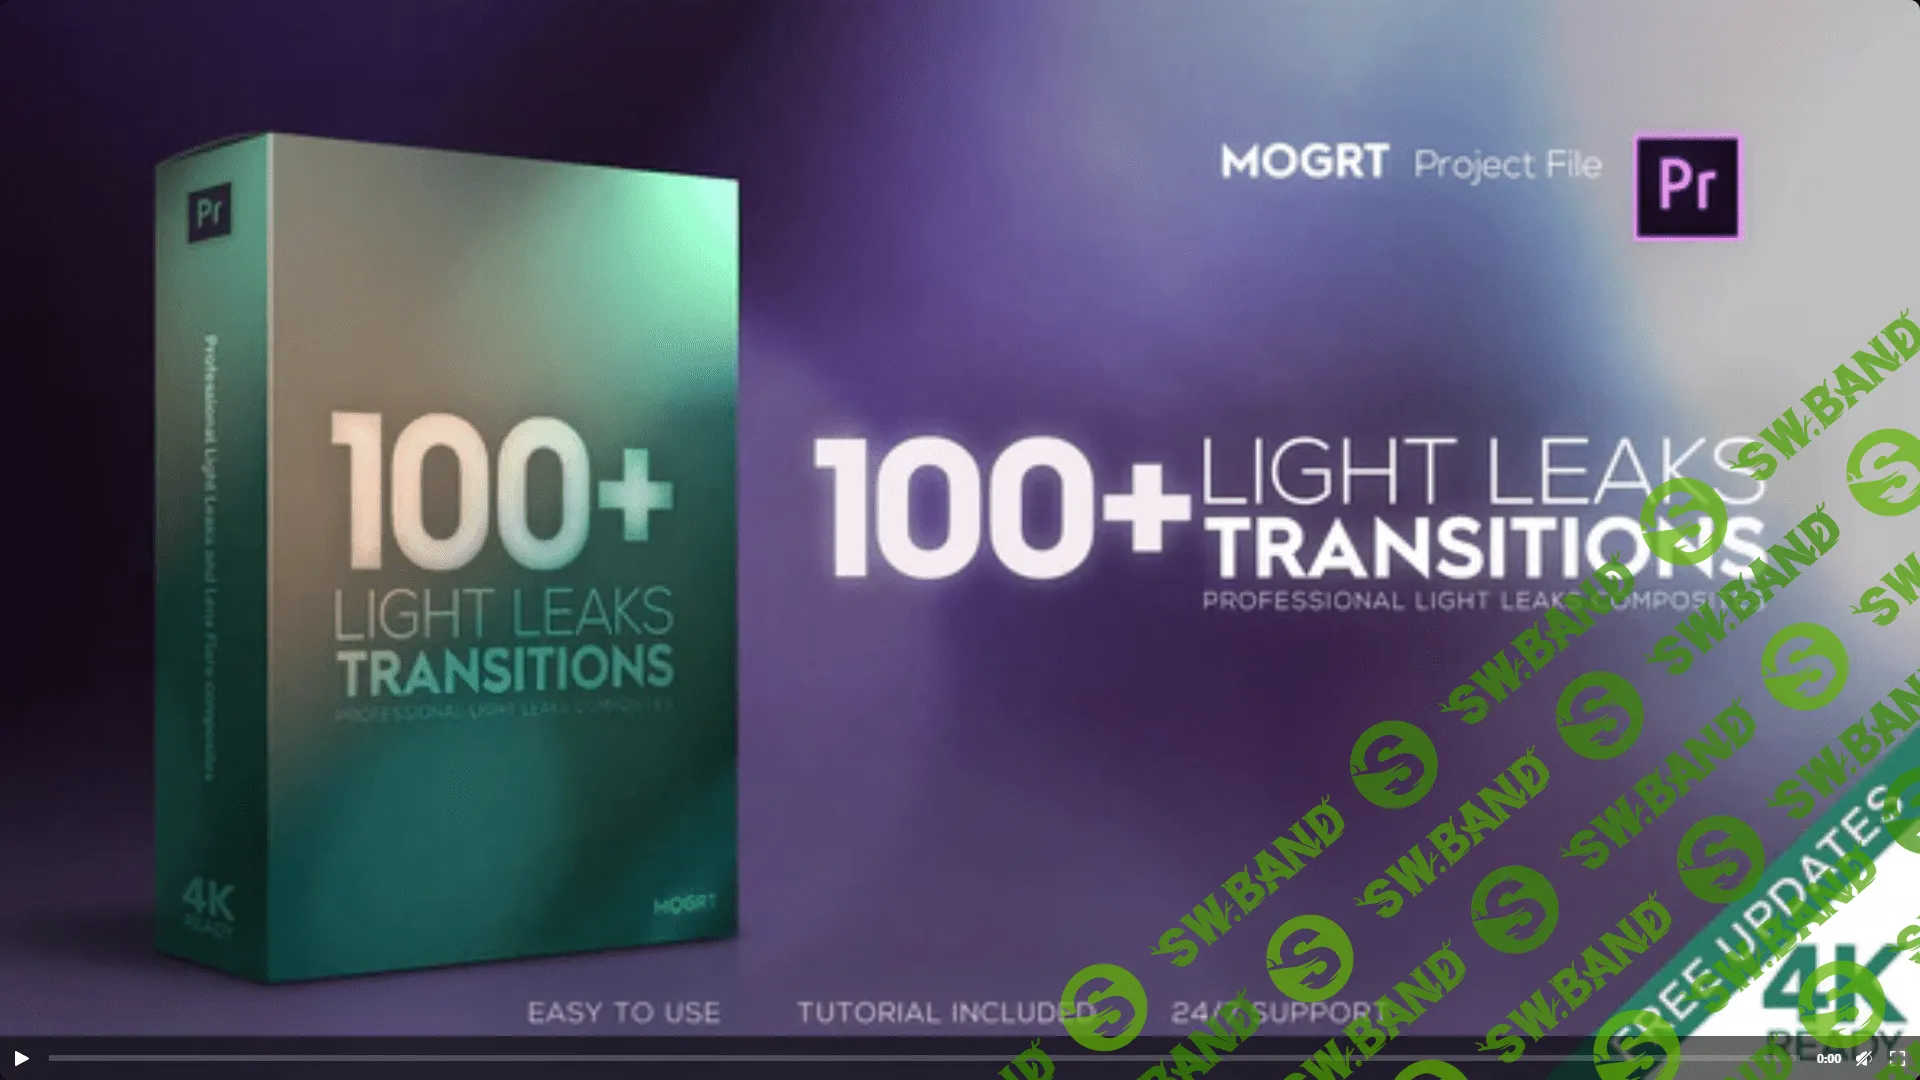 4K Light Leaks Transitions